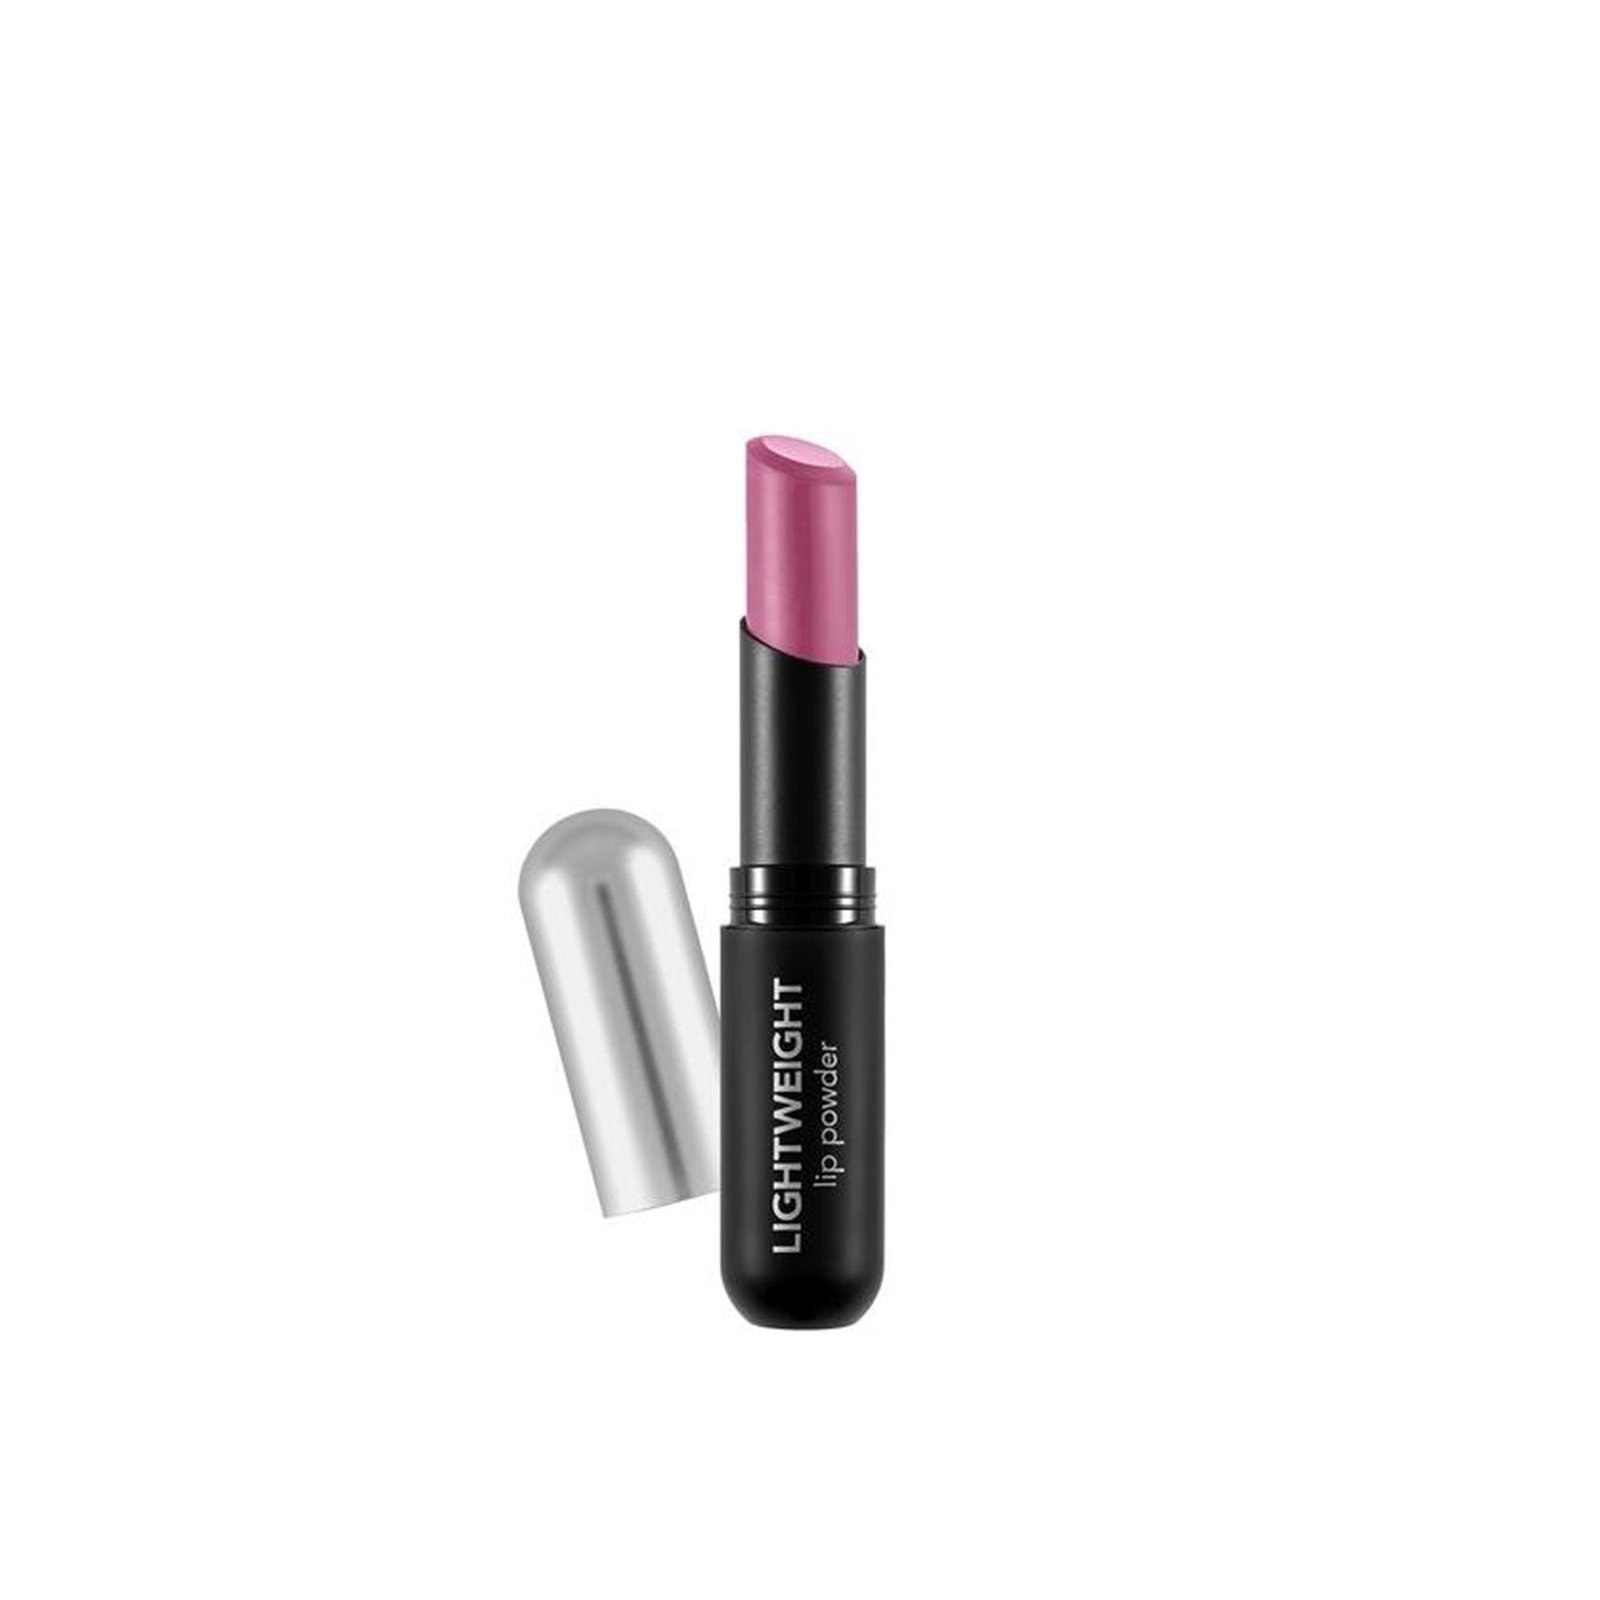 Flormar Lightweight Lip Powder Ultra Light Lipstick 016 Flormar Pink 3g (0.10oz)